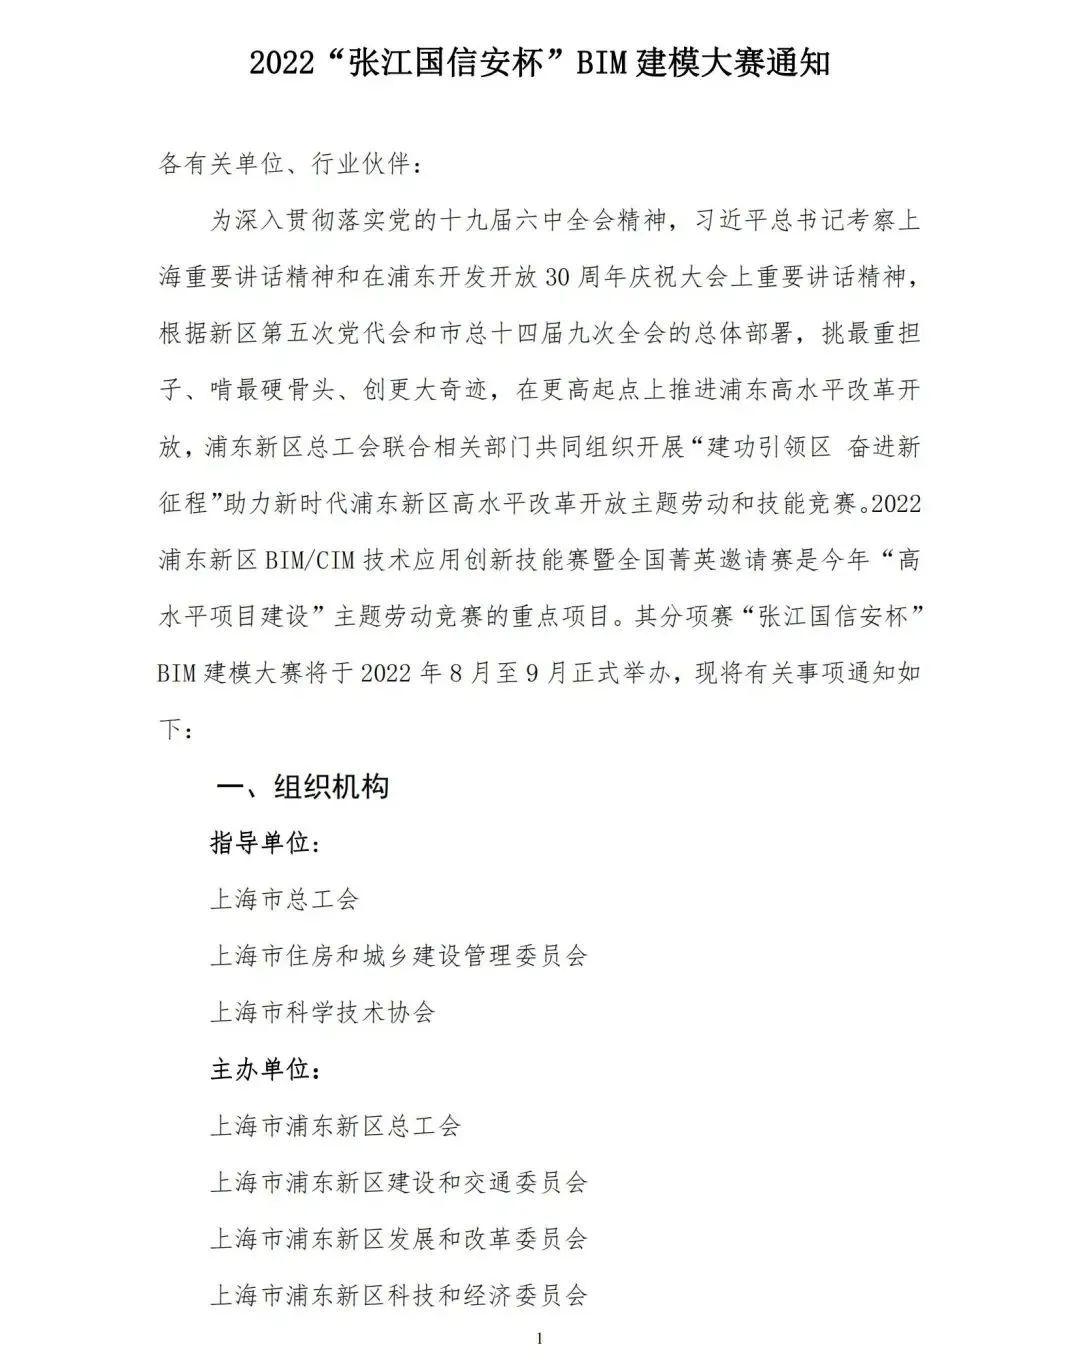 上海市2022“张江国信安杯”BIM建模大赛开始报名